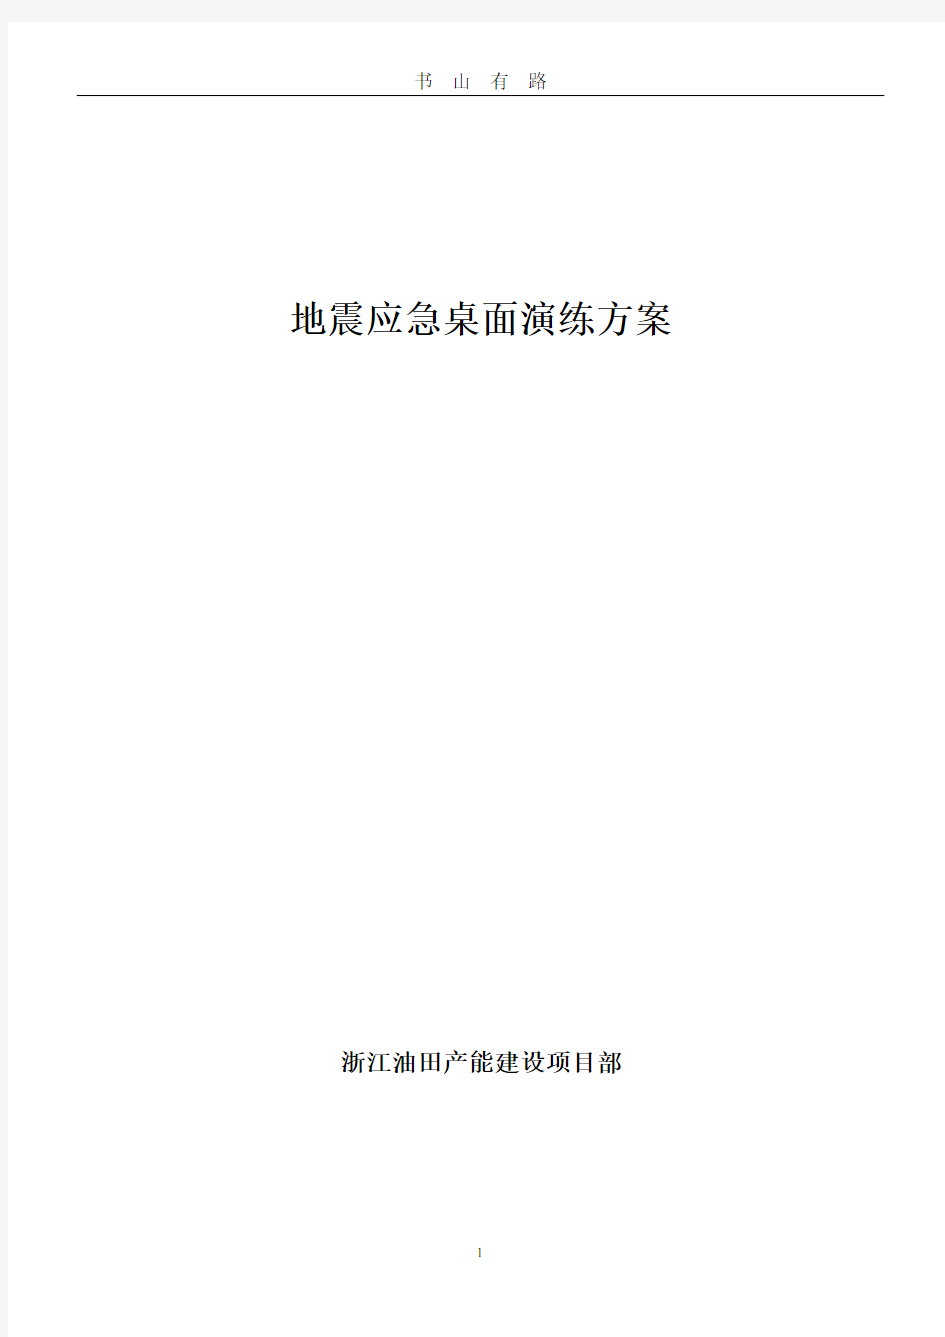 地震应急桌面演练方案PDF.pdf